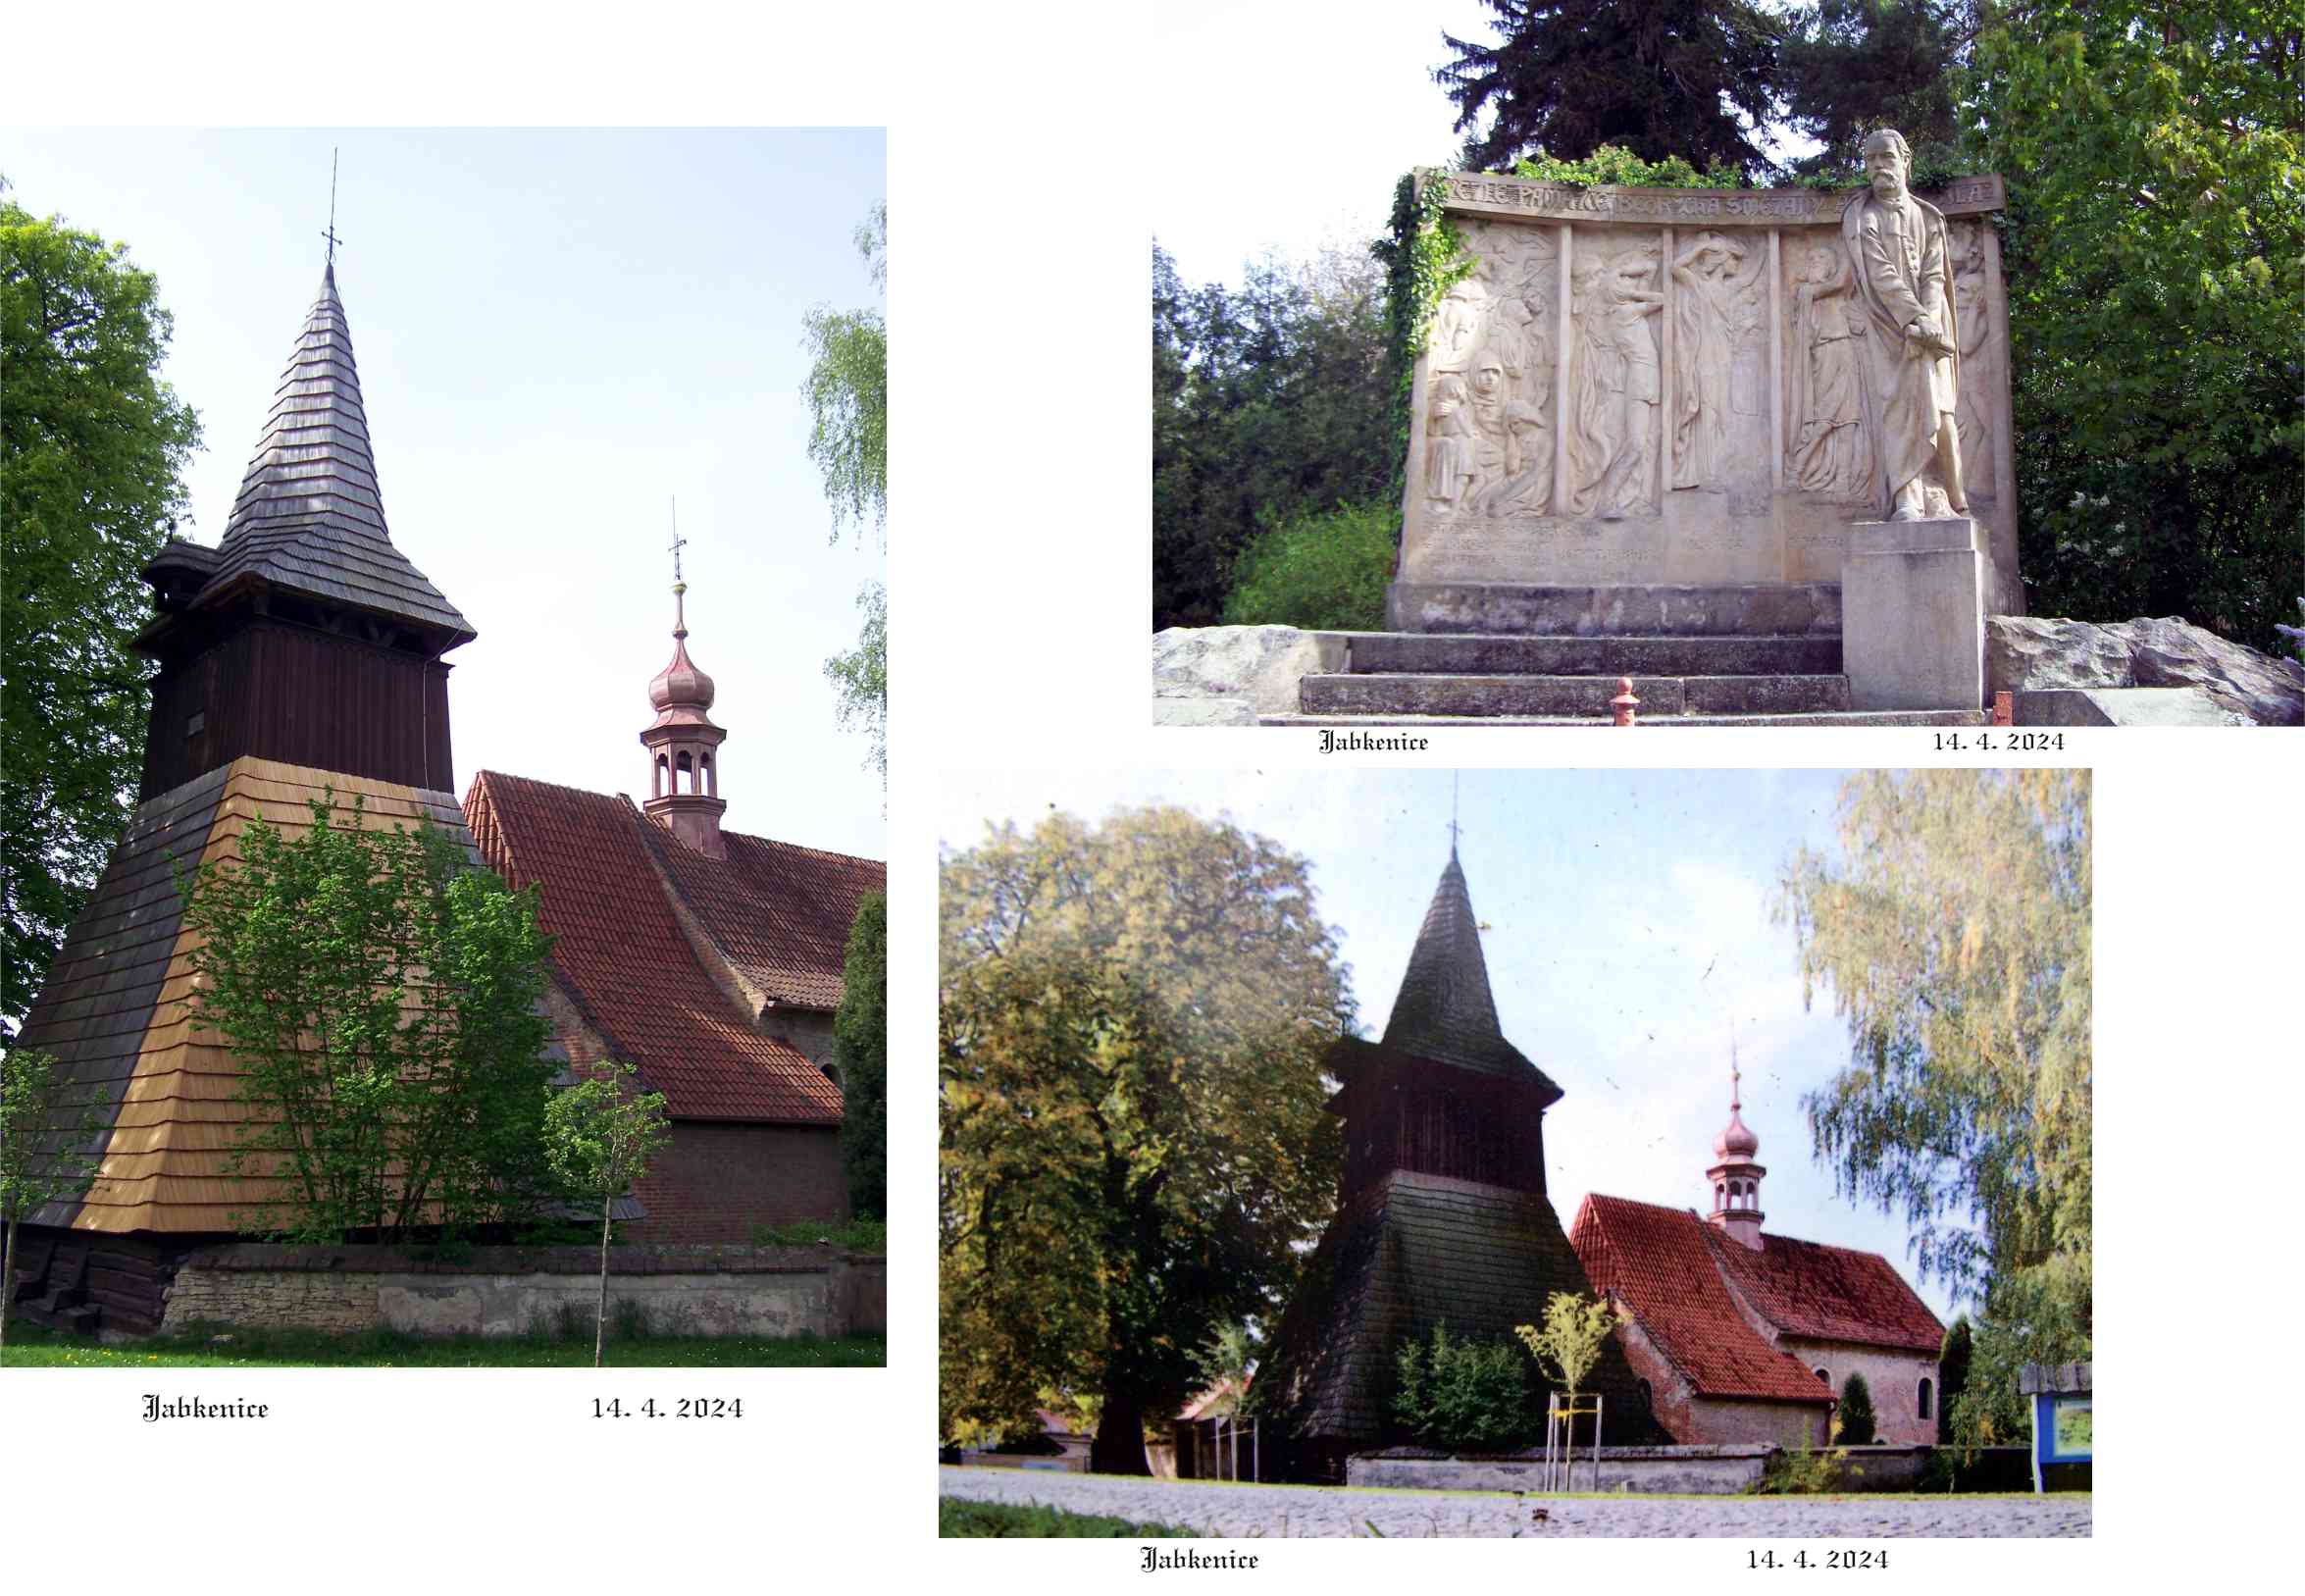 V obci samotné je úžasný pomník Bedřicha Smetany a unikátní dřevěná zvonice s gotickým kostelem.